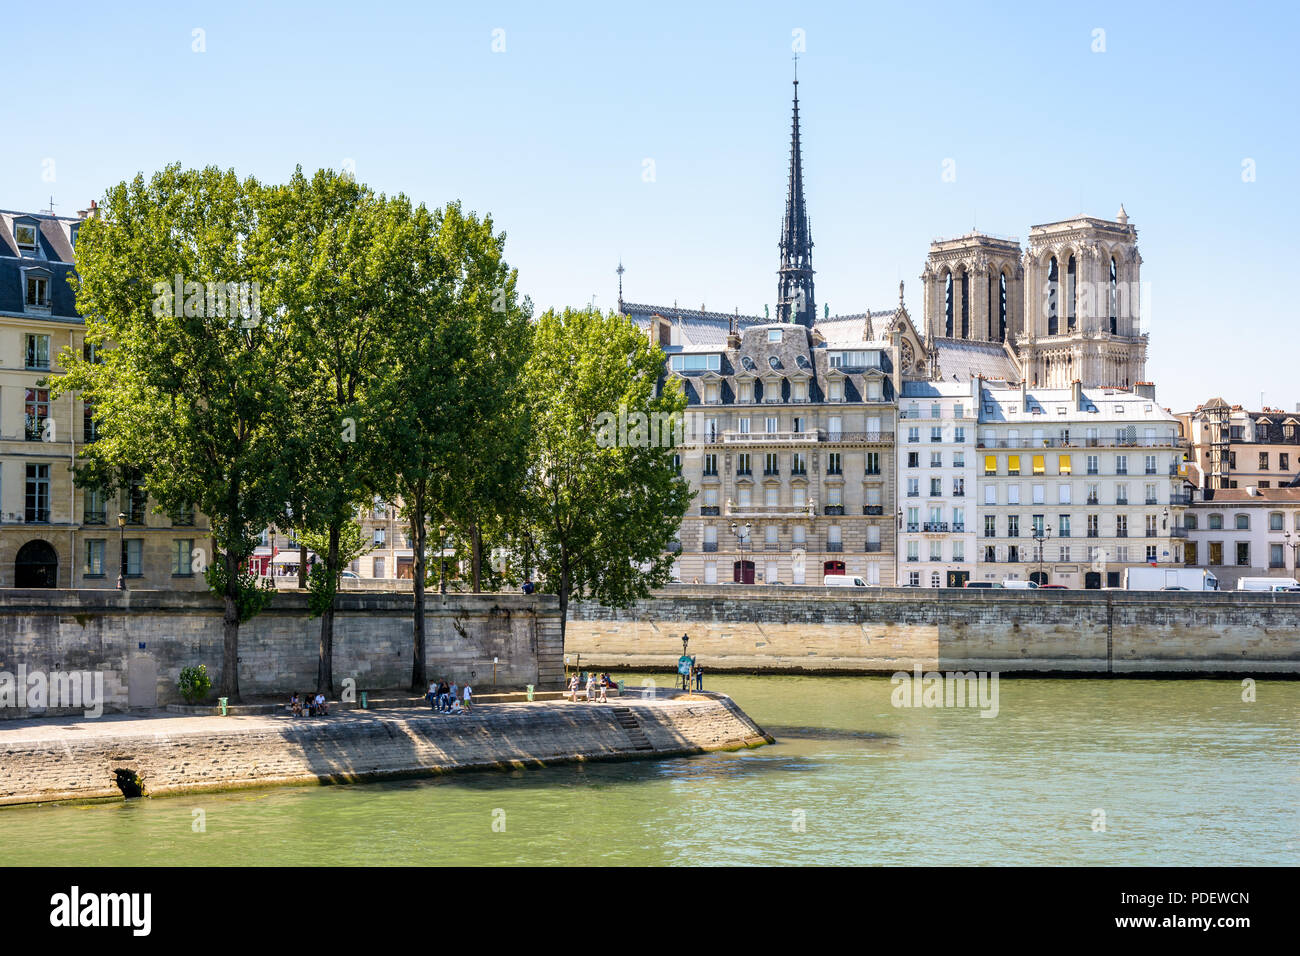 Vue de l'Ile de la cité, sur la Seine à Paris, en France, avec la cathédrale Notre-Dame de Paris dépassant les bâtiments par une journée ensoleillée. Banque D'Images